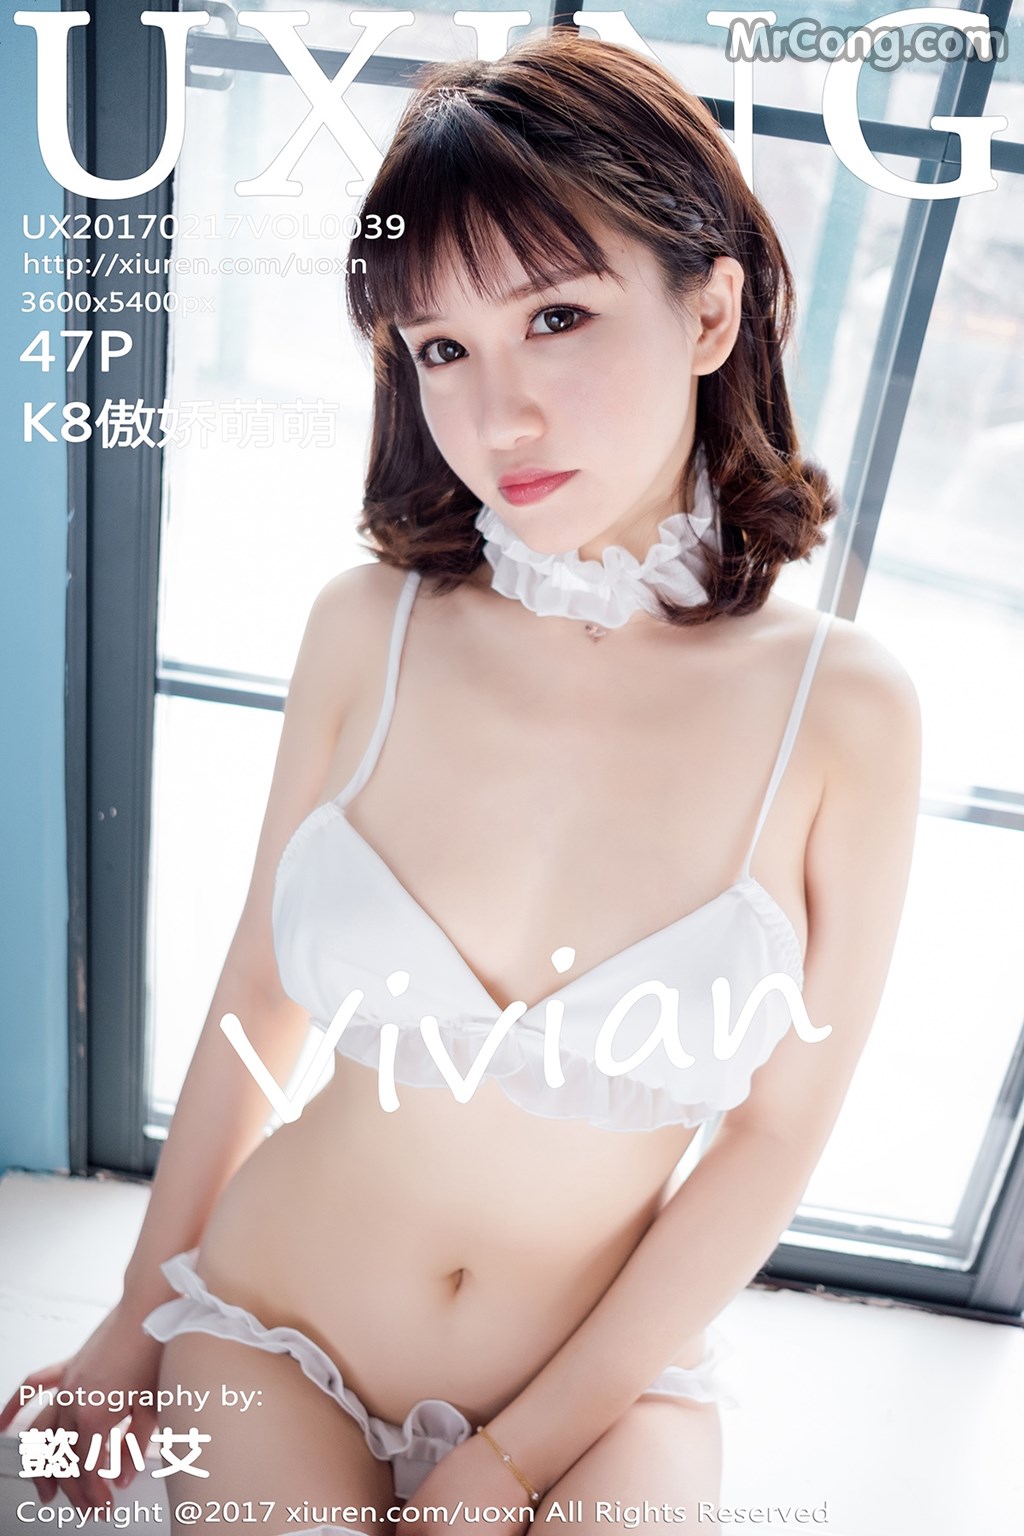 UXING Vol.039: Model Aojiao Meng Meng (K8 傲 娇 萌萌 Vivian) (48 photos) photo 1-0